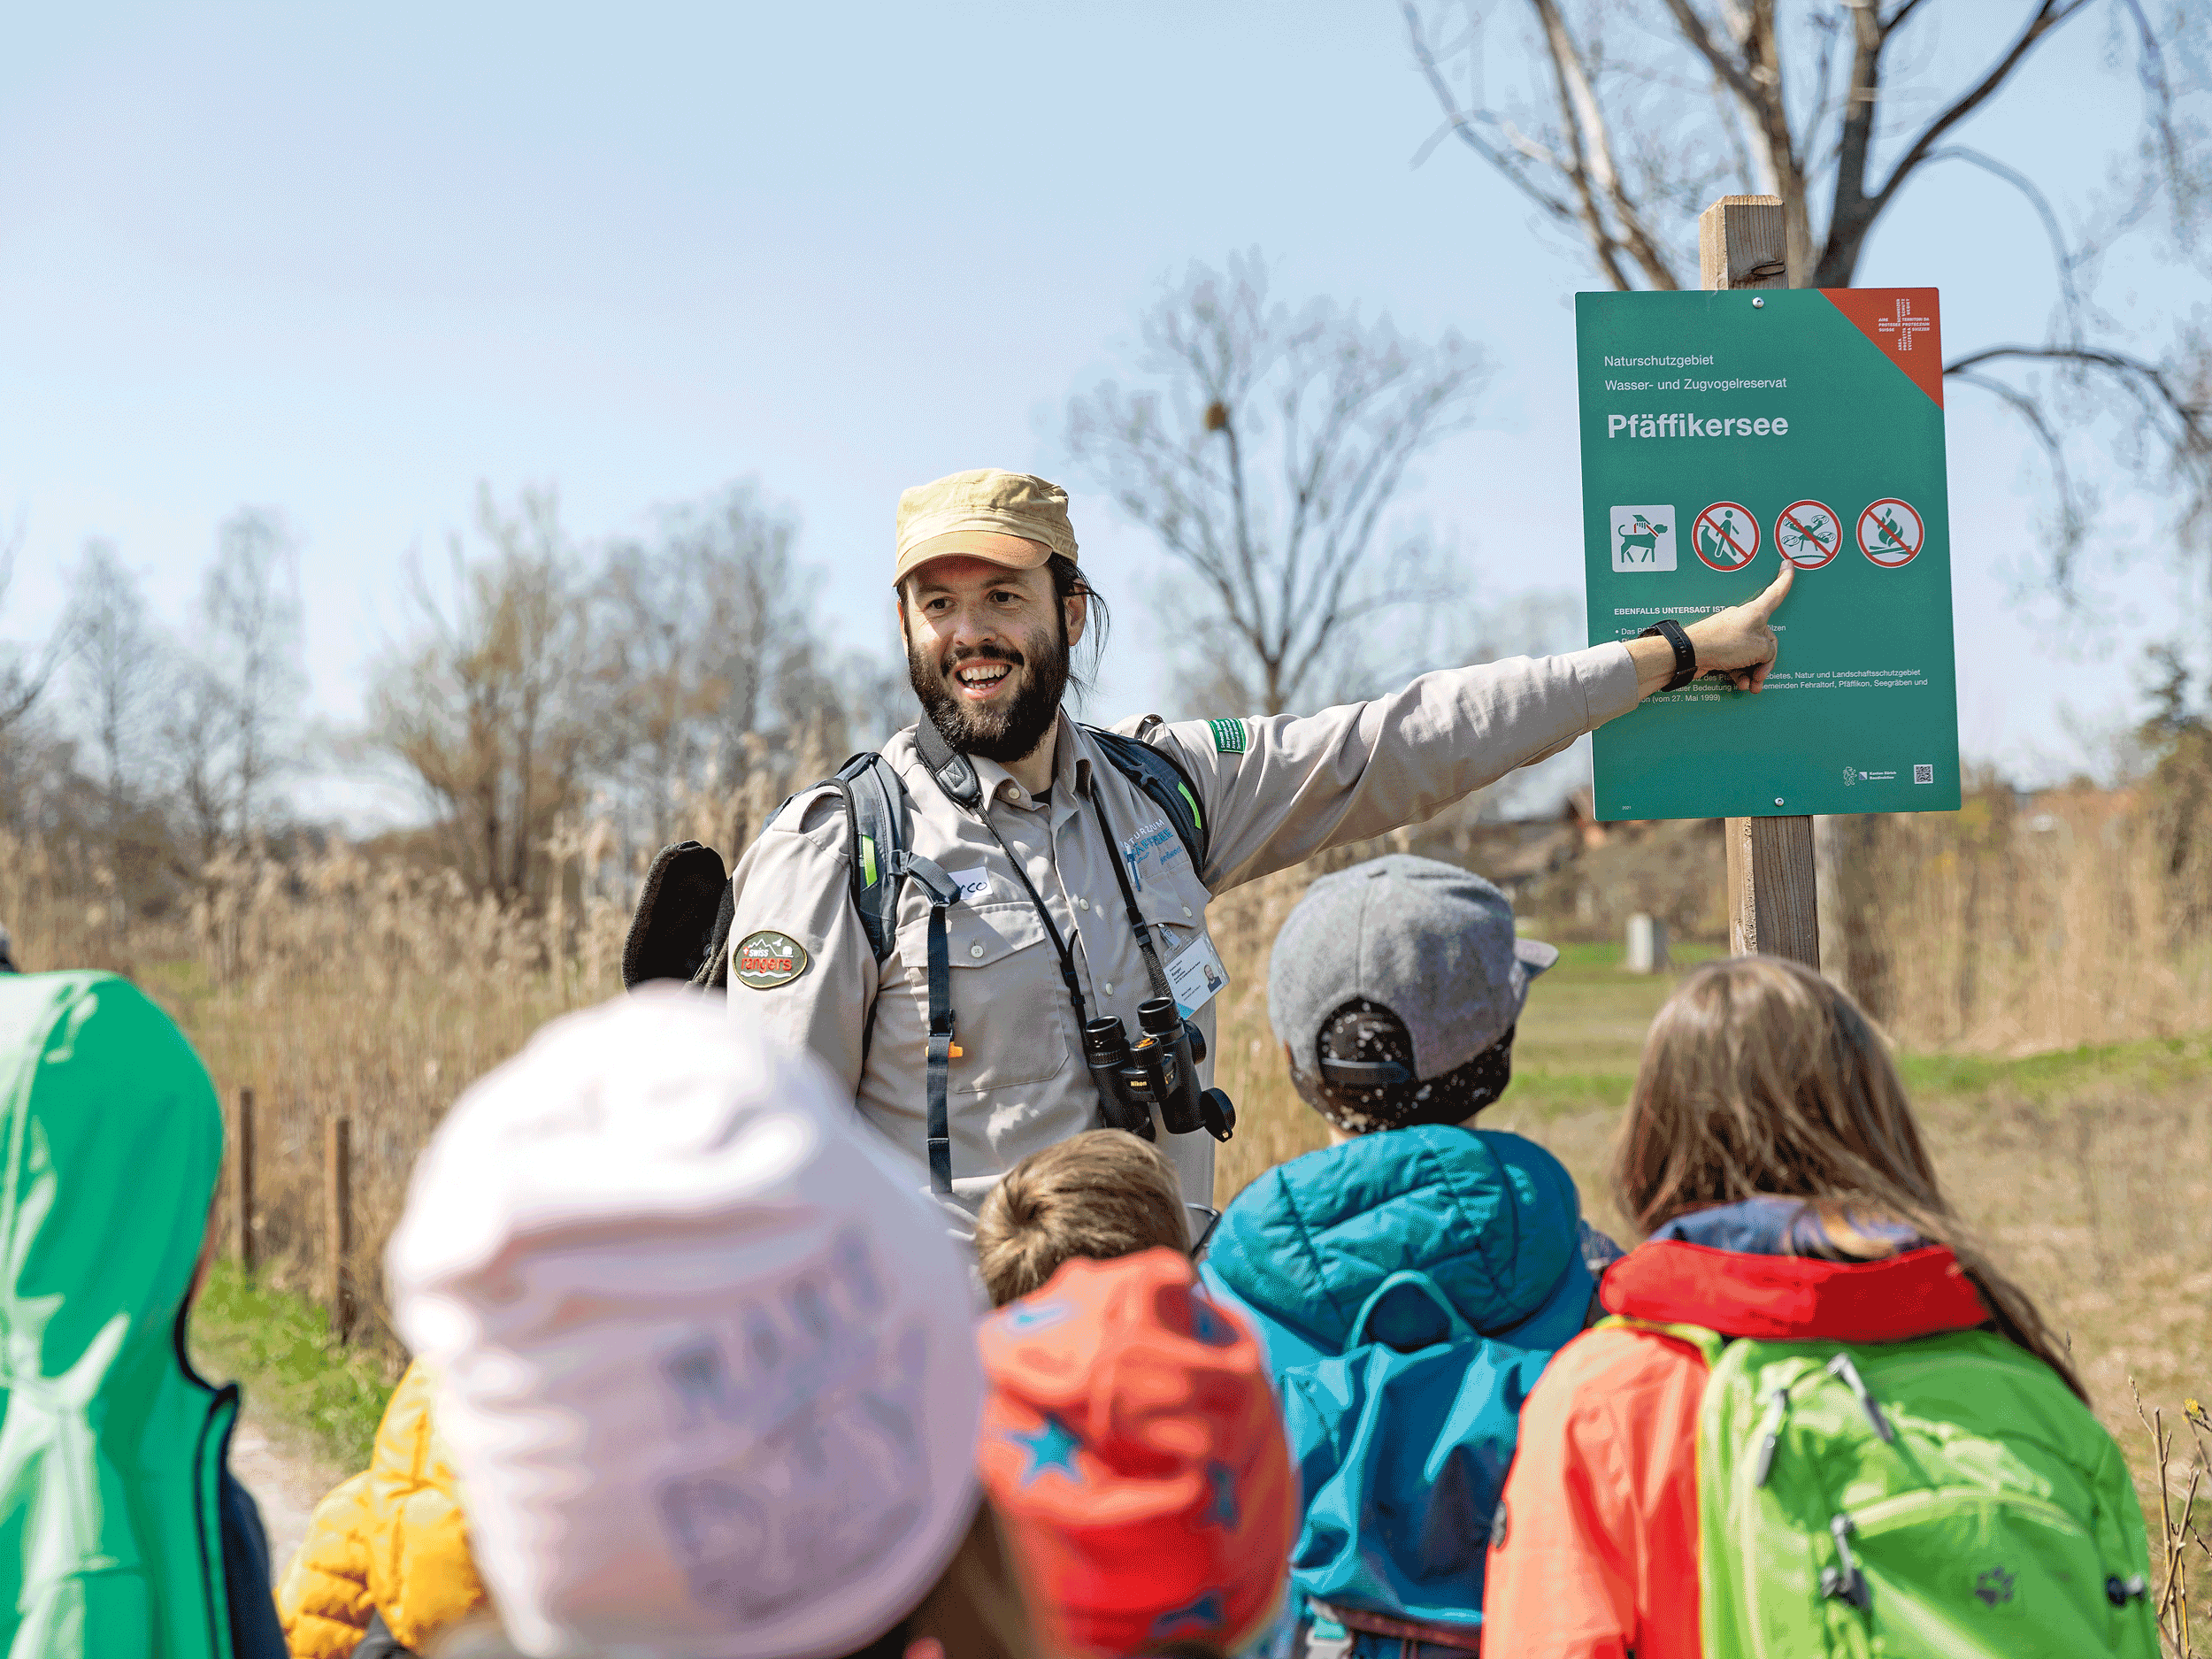 Der Pfäffikersee ist nicht nur ein Naturschutzgebiet, sondern seit 2009 auch ein Wasser- und Zugvogelreservat. Ranger Marco Lupi will wissen, ob die Kinder die Regeln kennen. Spoiler: Ja!